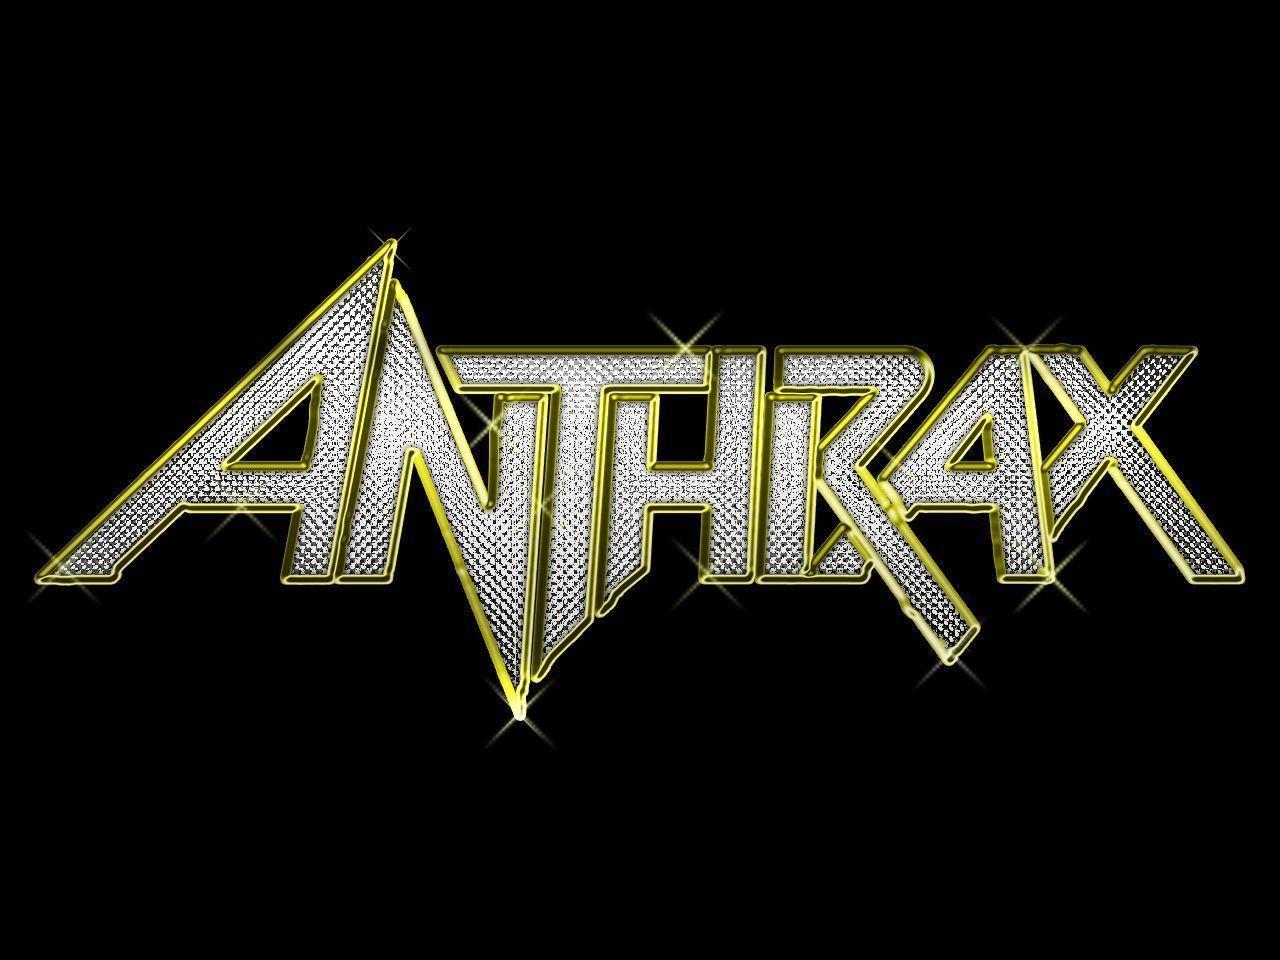 Anthrax Wallpaper -A12 Band Wallpaper